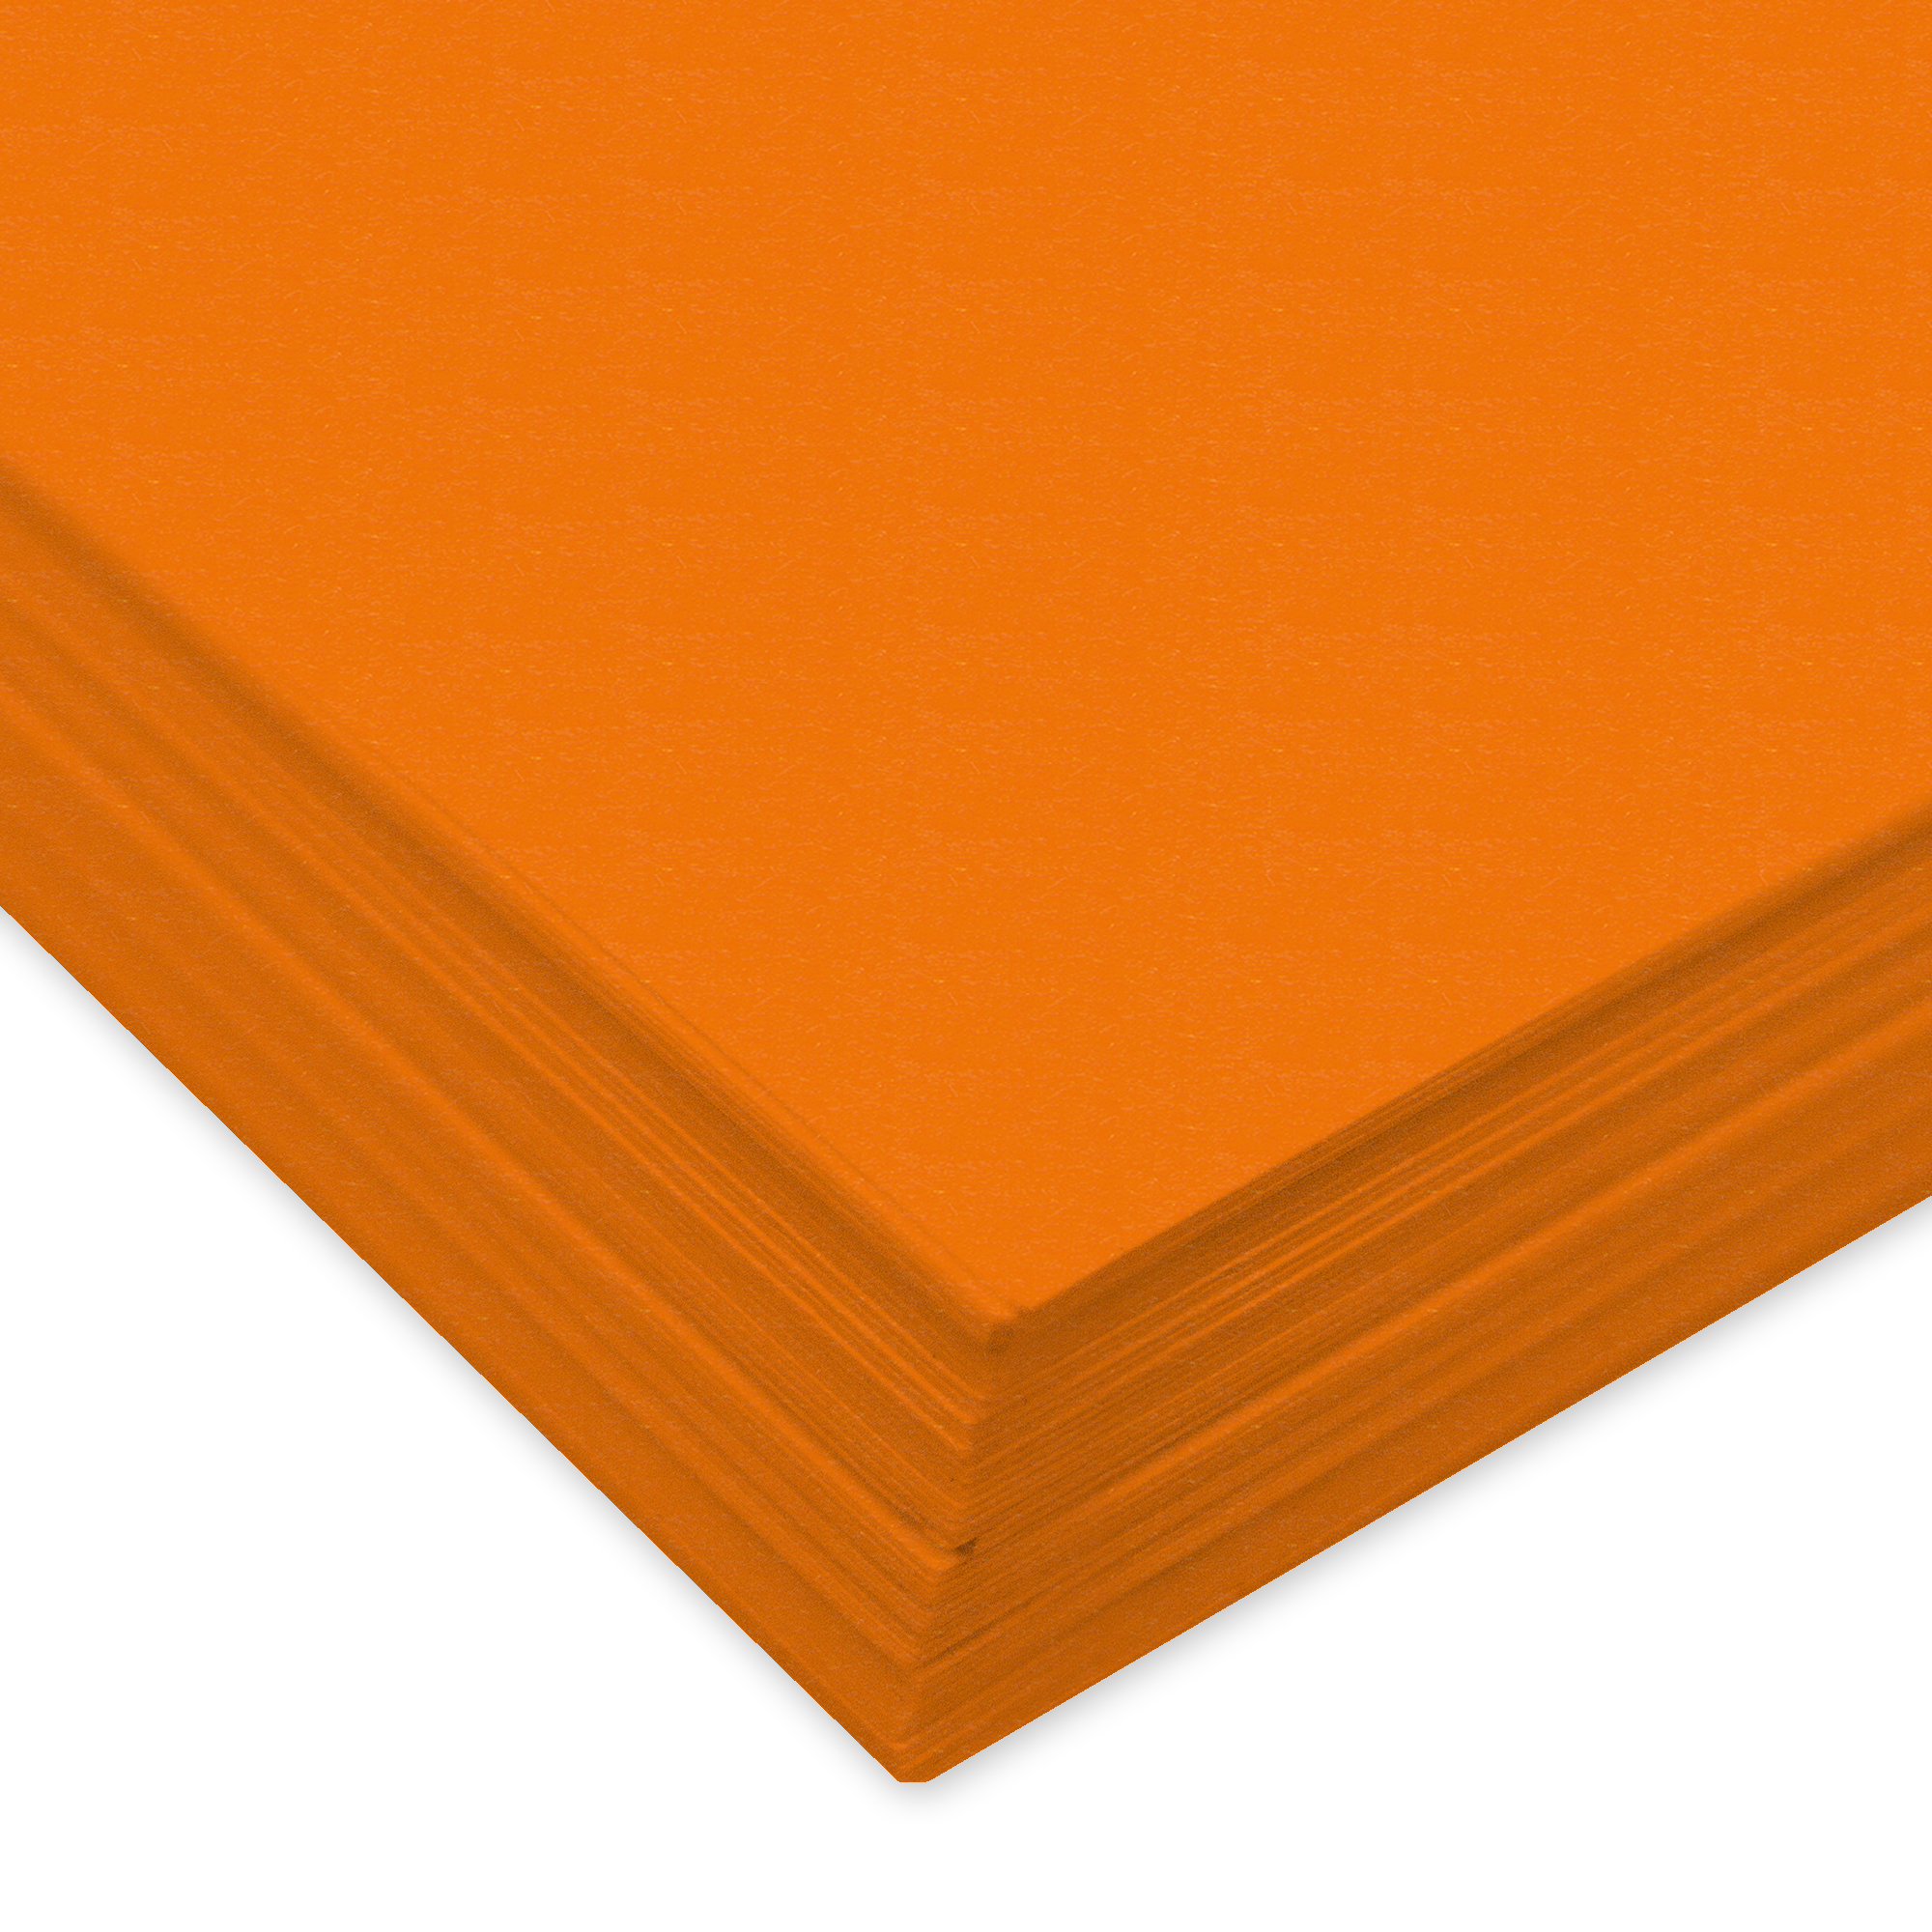 URSUS Papier à dessin couleur A4 2174640 130g, orange 100 feuilles 130g, orange 100 feuilles